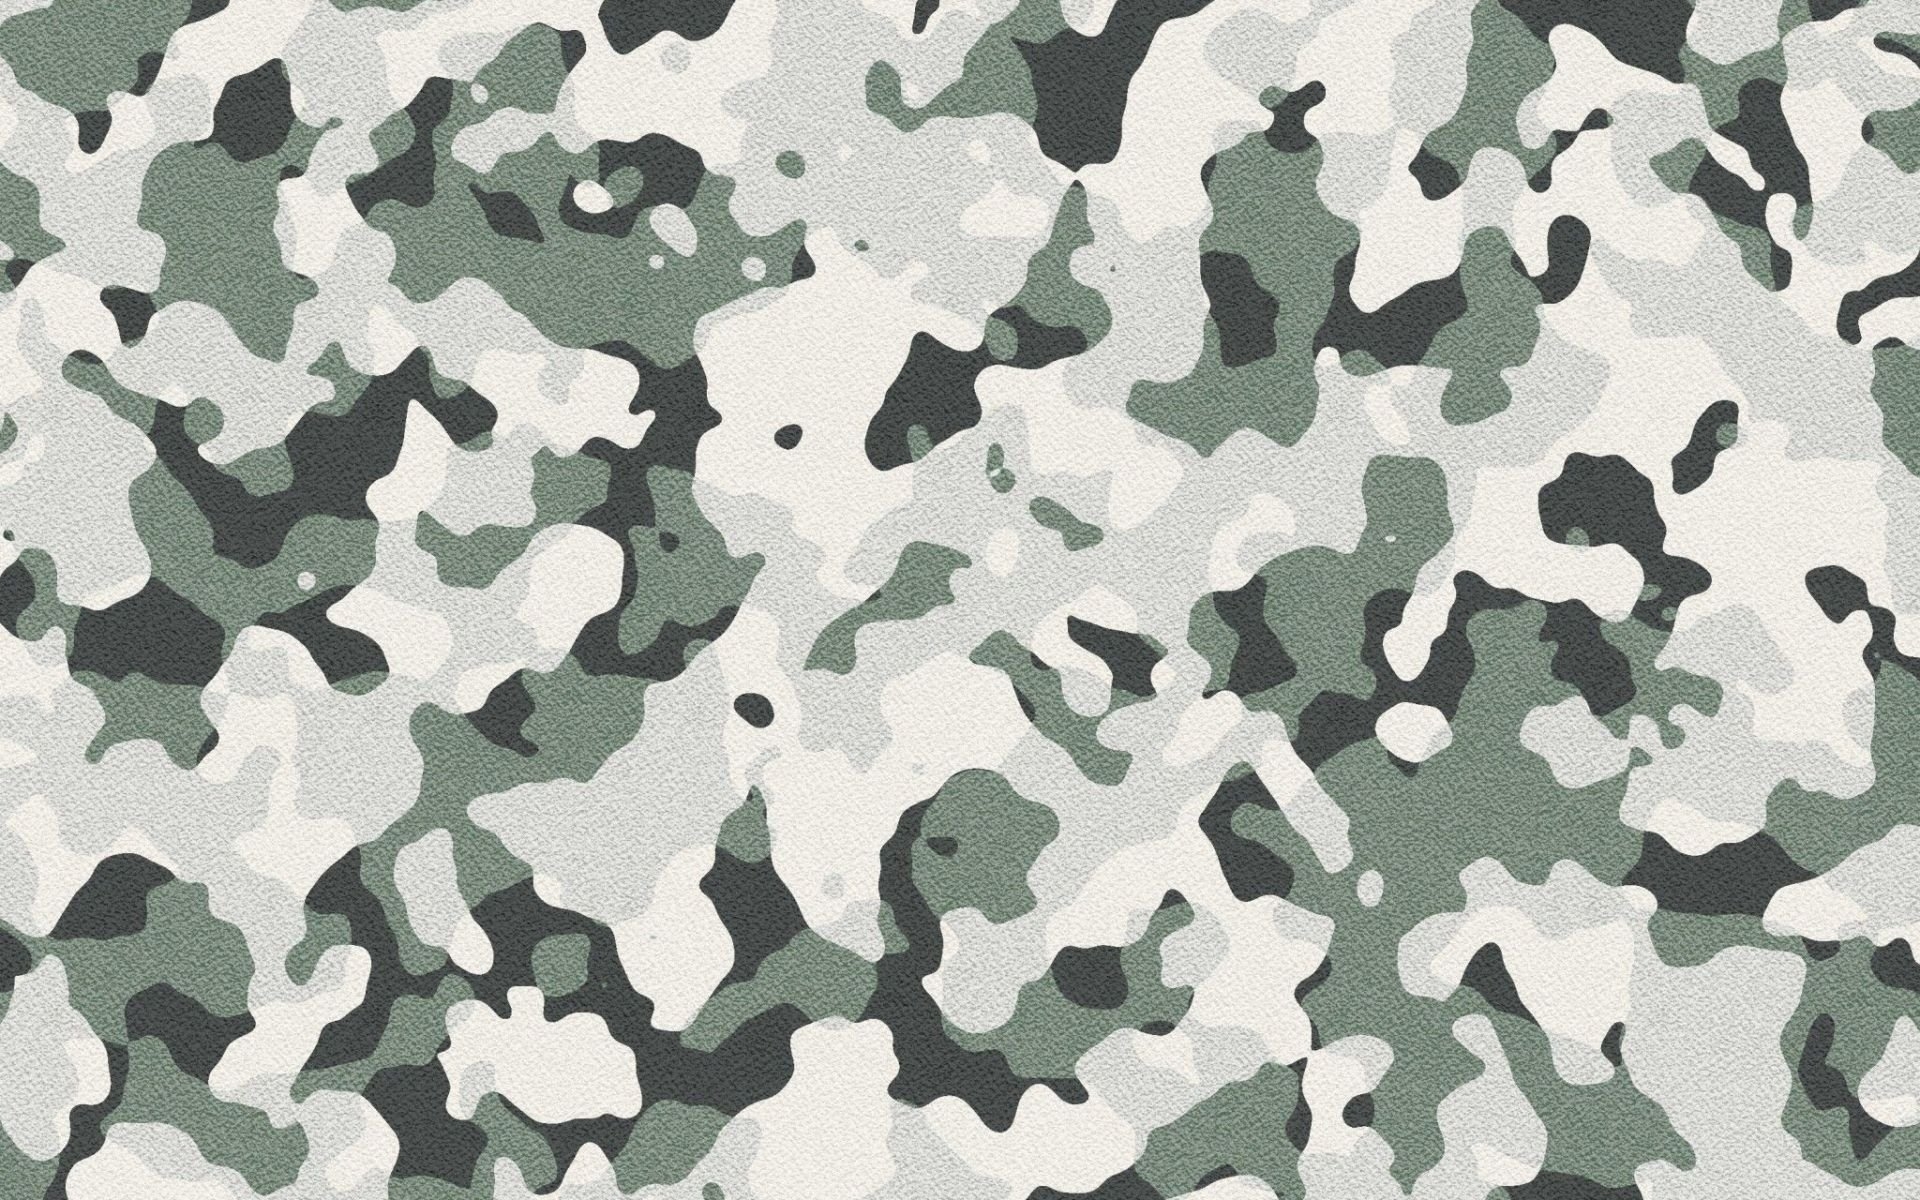 Фон военной формы. T&G tg191 камуфляж. Woodland Camouflage 4r. Камуфляжный фон.